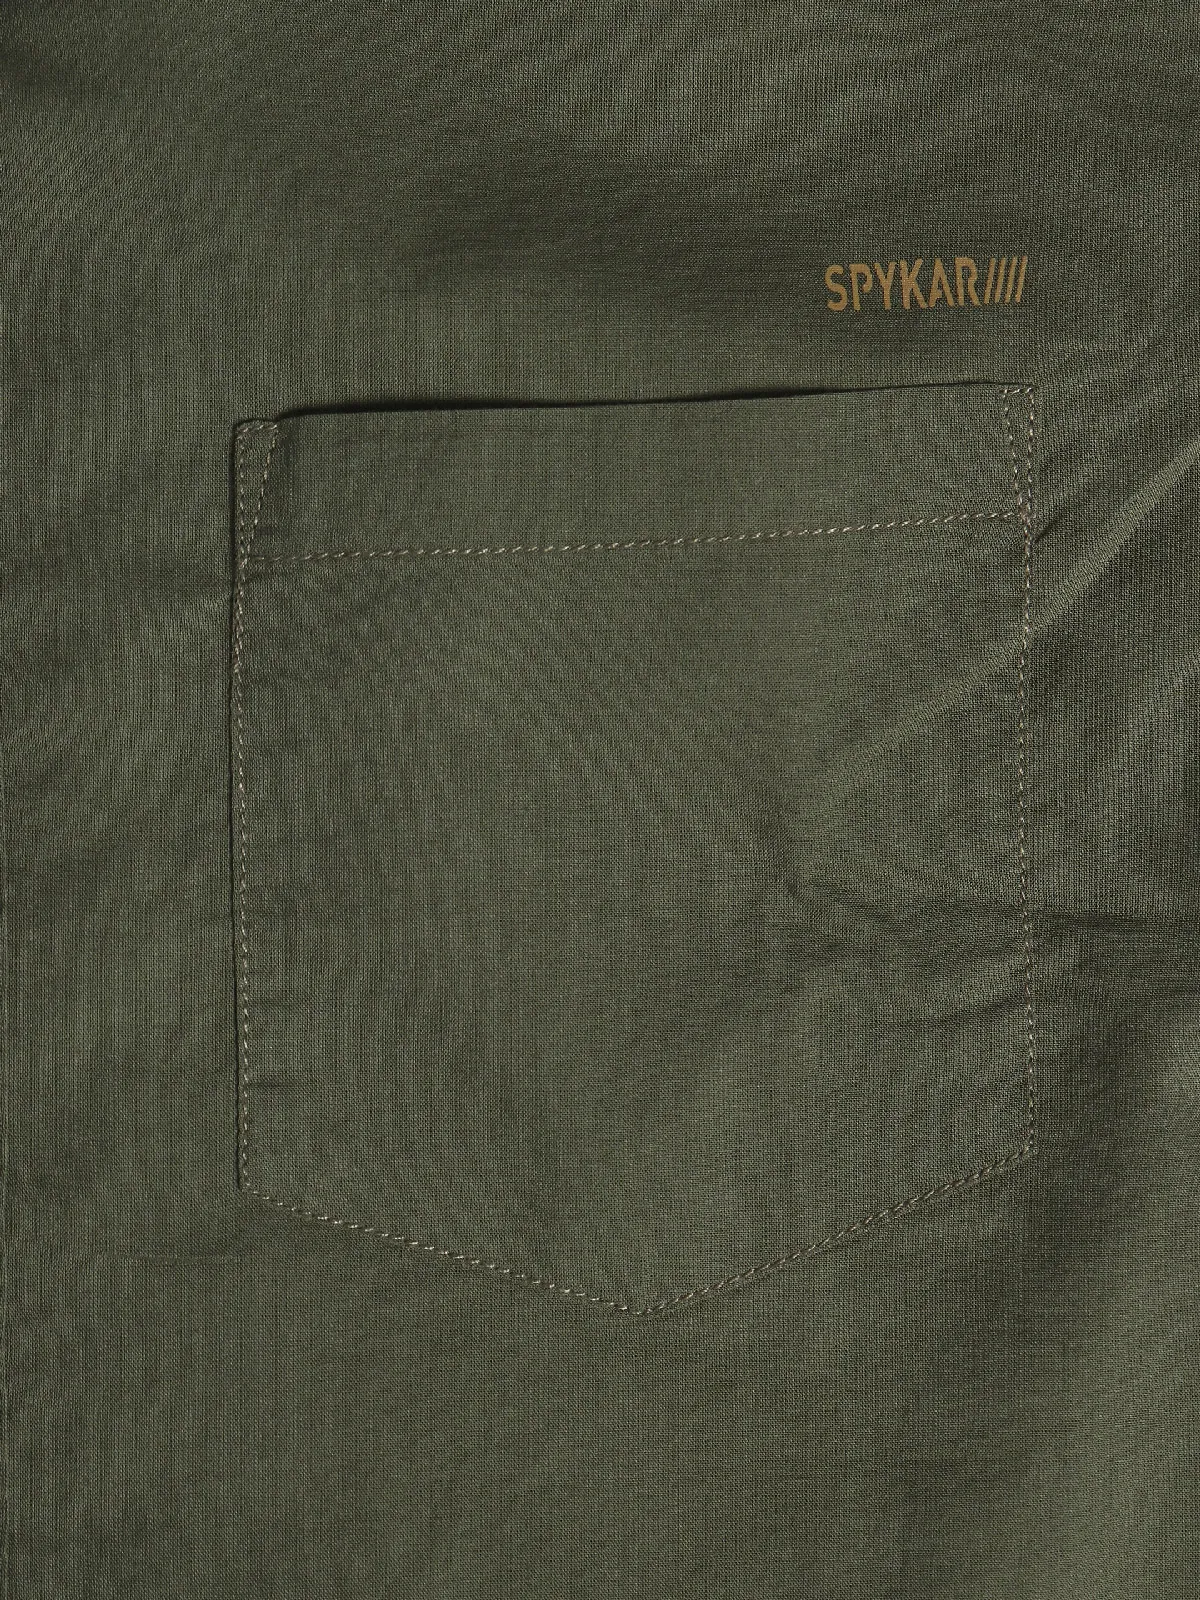 Spykar dark gree cotton plain shirt